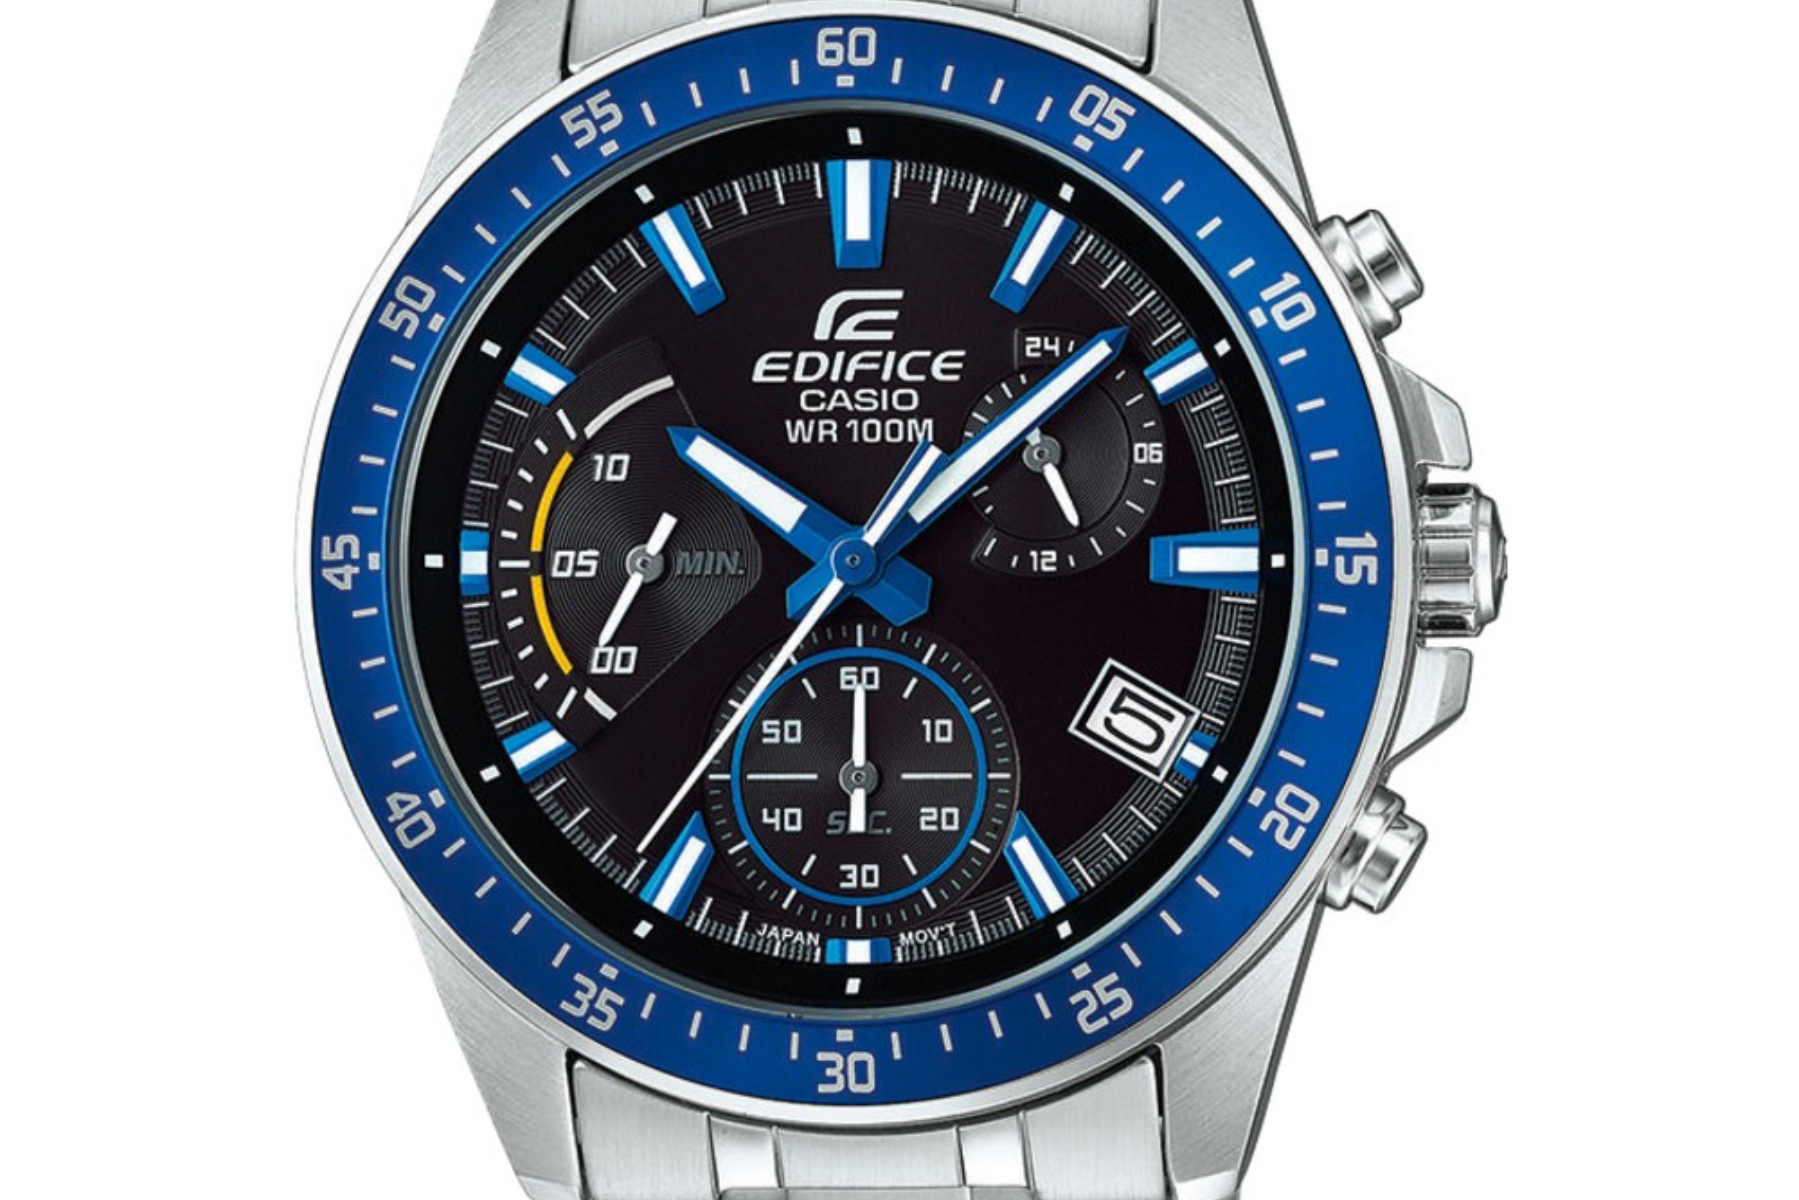 Pánske náramkové hodinky Casio EDIFICE EFV-540D-1A2VUEF chronograf